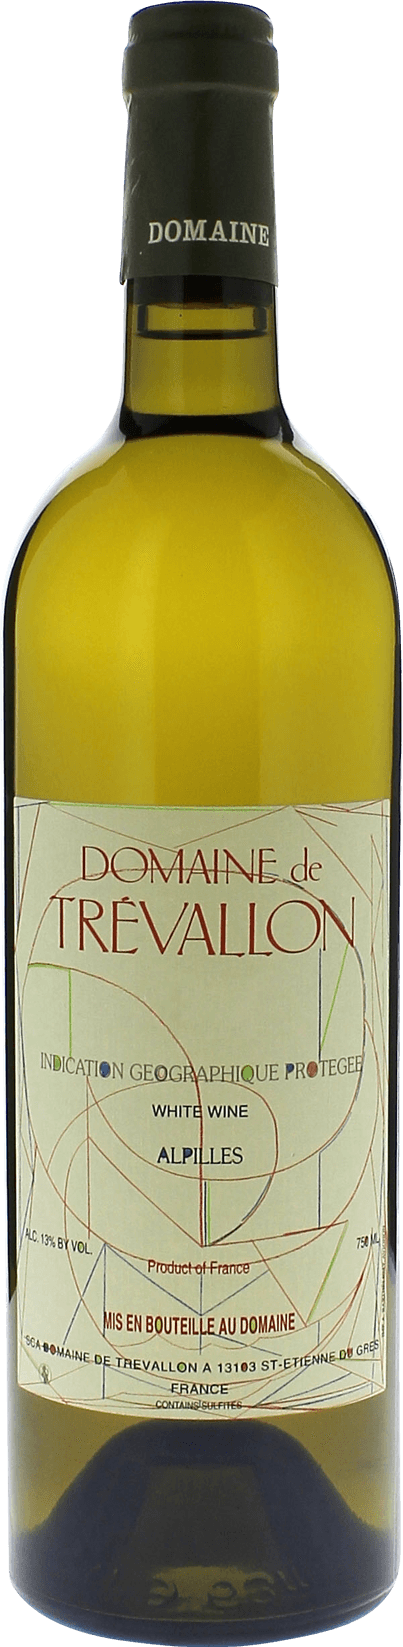 Domaine de trevallon blanc 1999  Vin de Pays, Provence